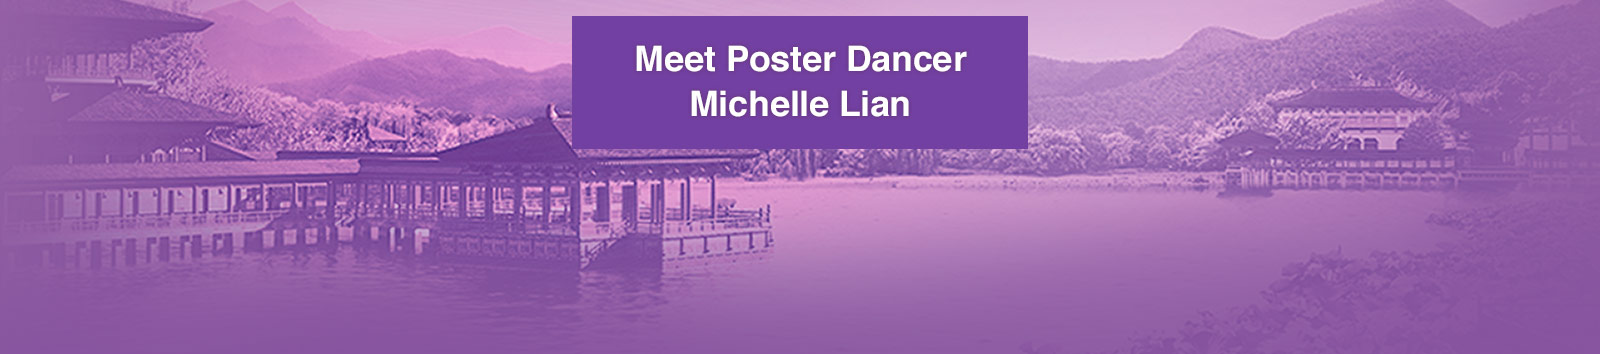 Meet Poster Dancer Michelle Lian